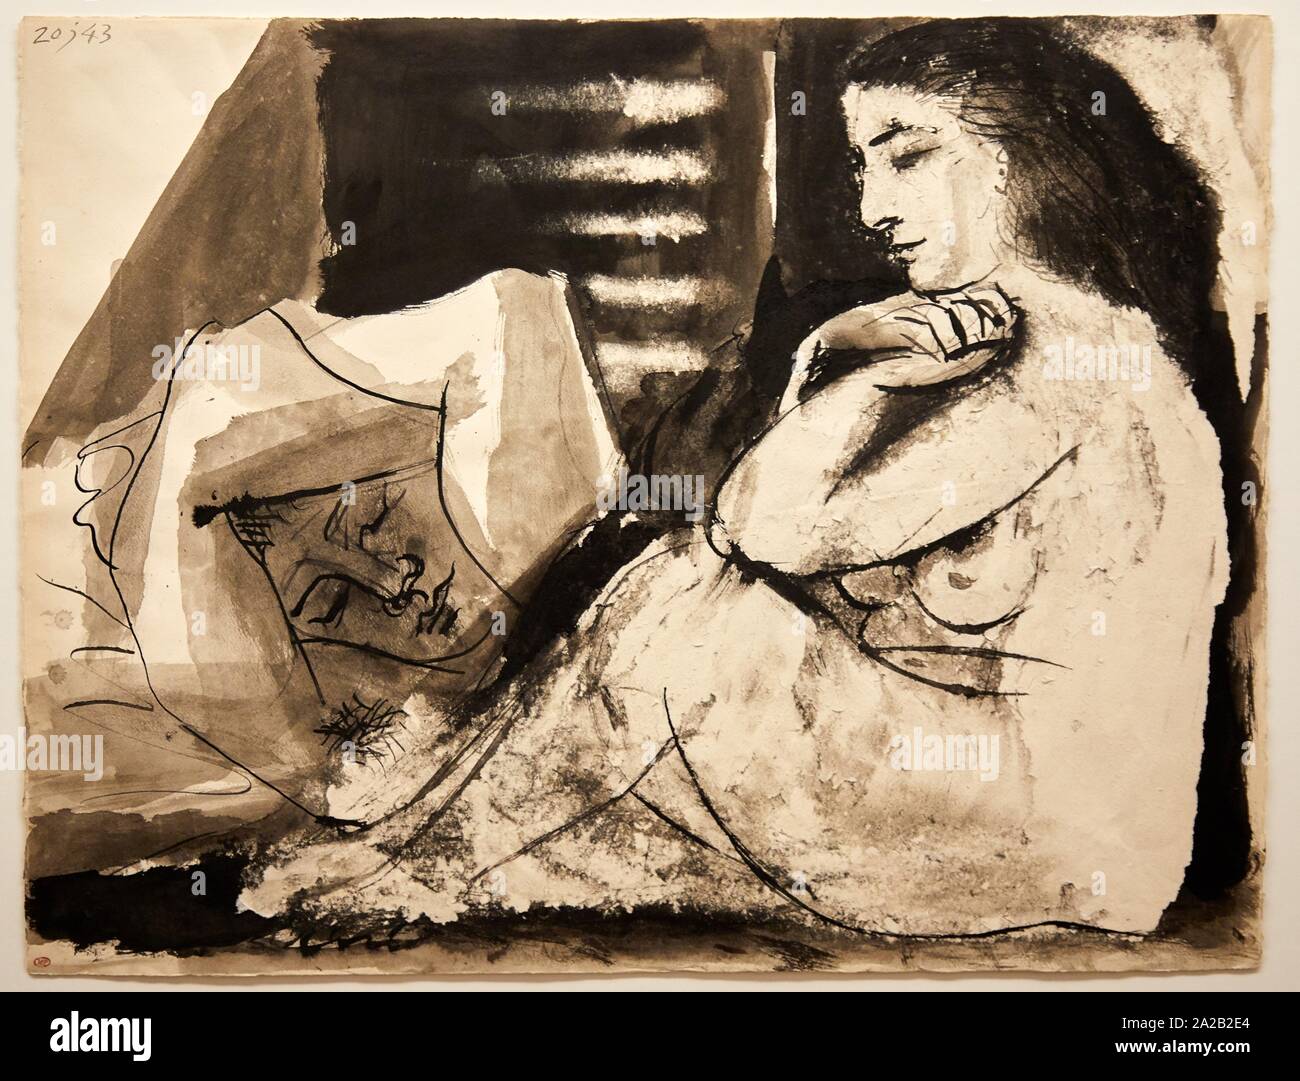 'Femme nue assise contemplant un homme endormi' de 1943, Pablo Picasso, Museo Picasso, París, Francia, Europa Foto de stock